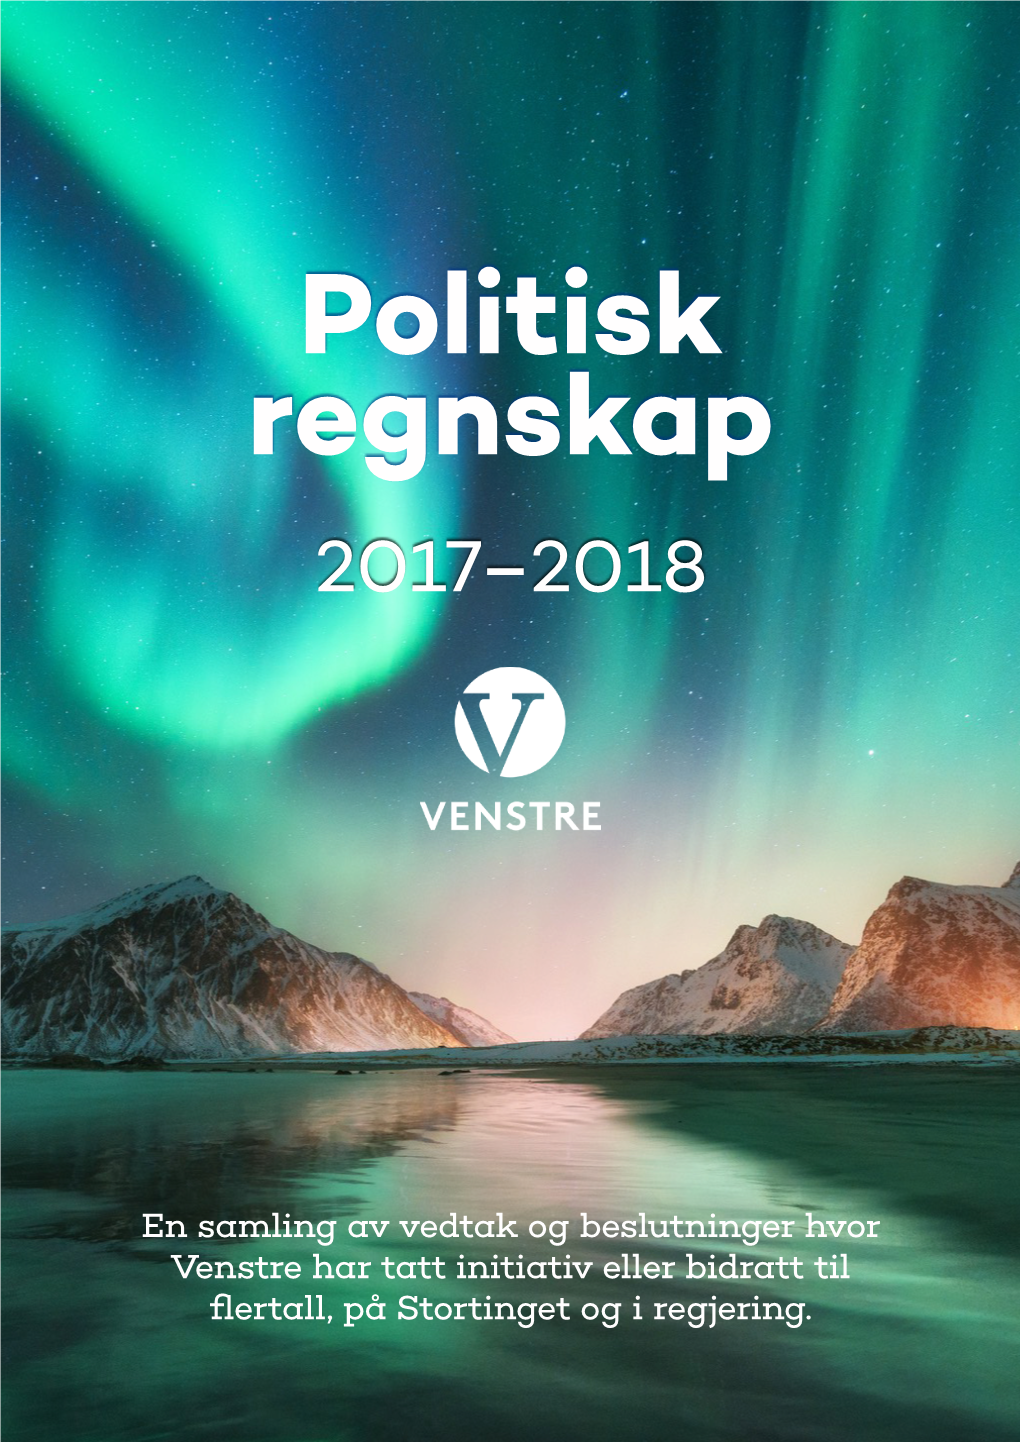 Politisk Regnskap for 2017-2018